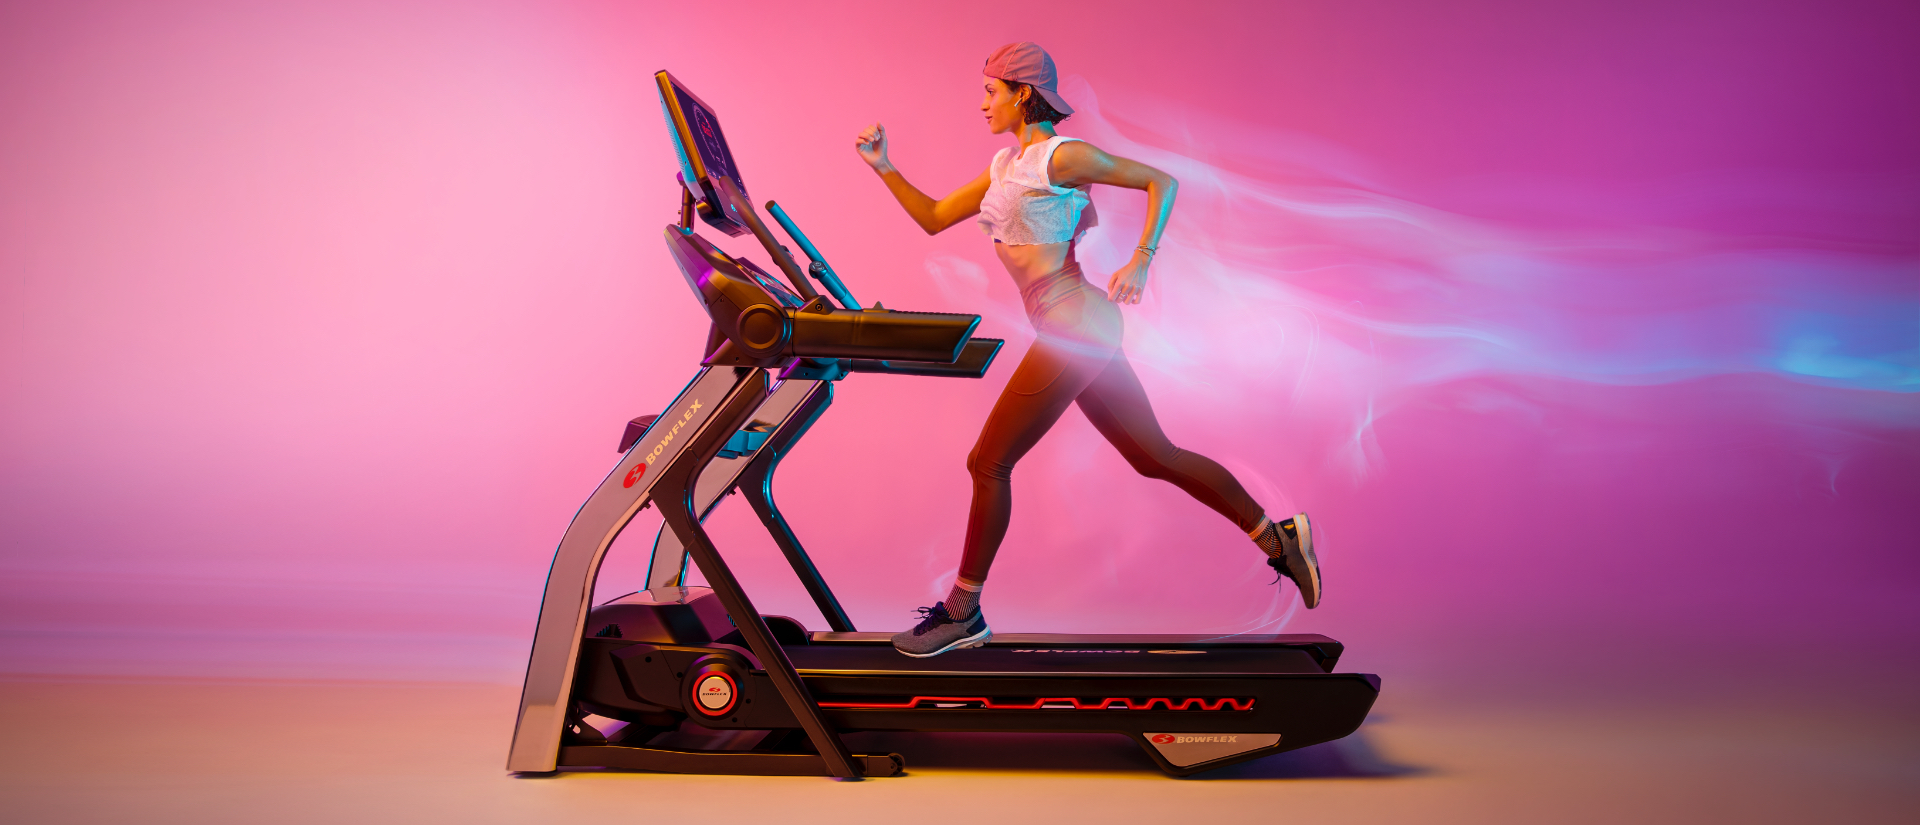 bowflex treadmill t22 feature pdp bg